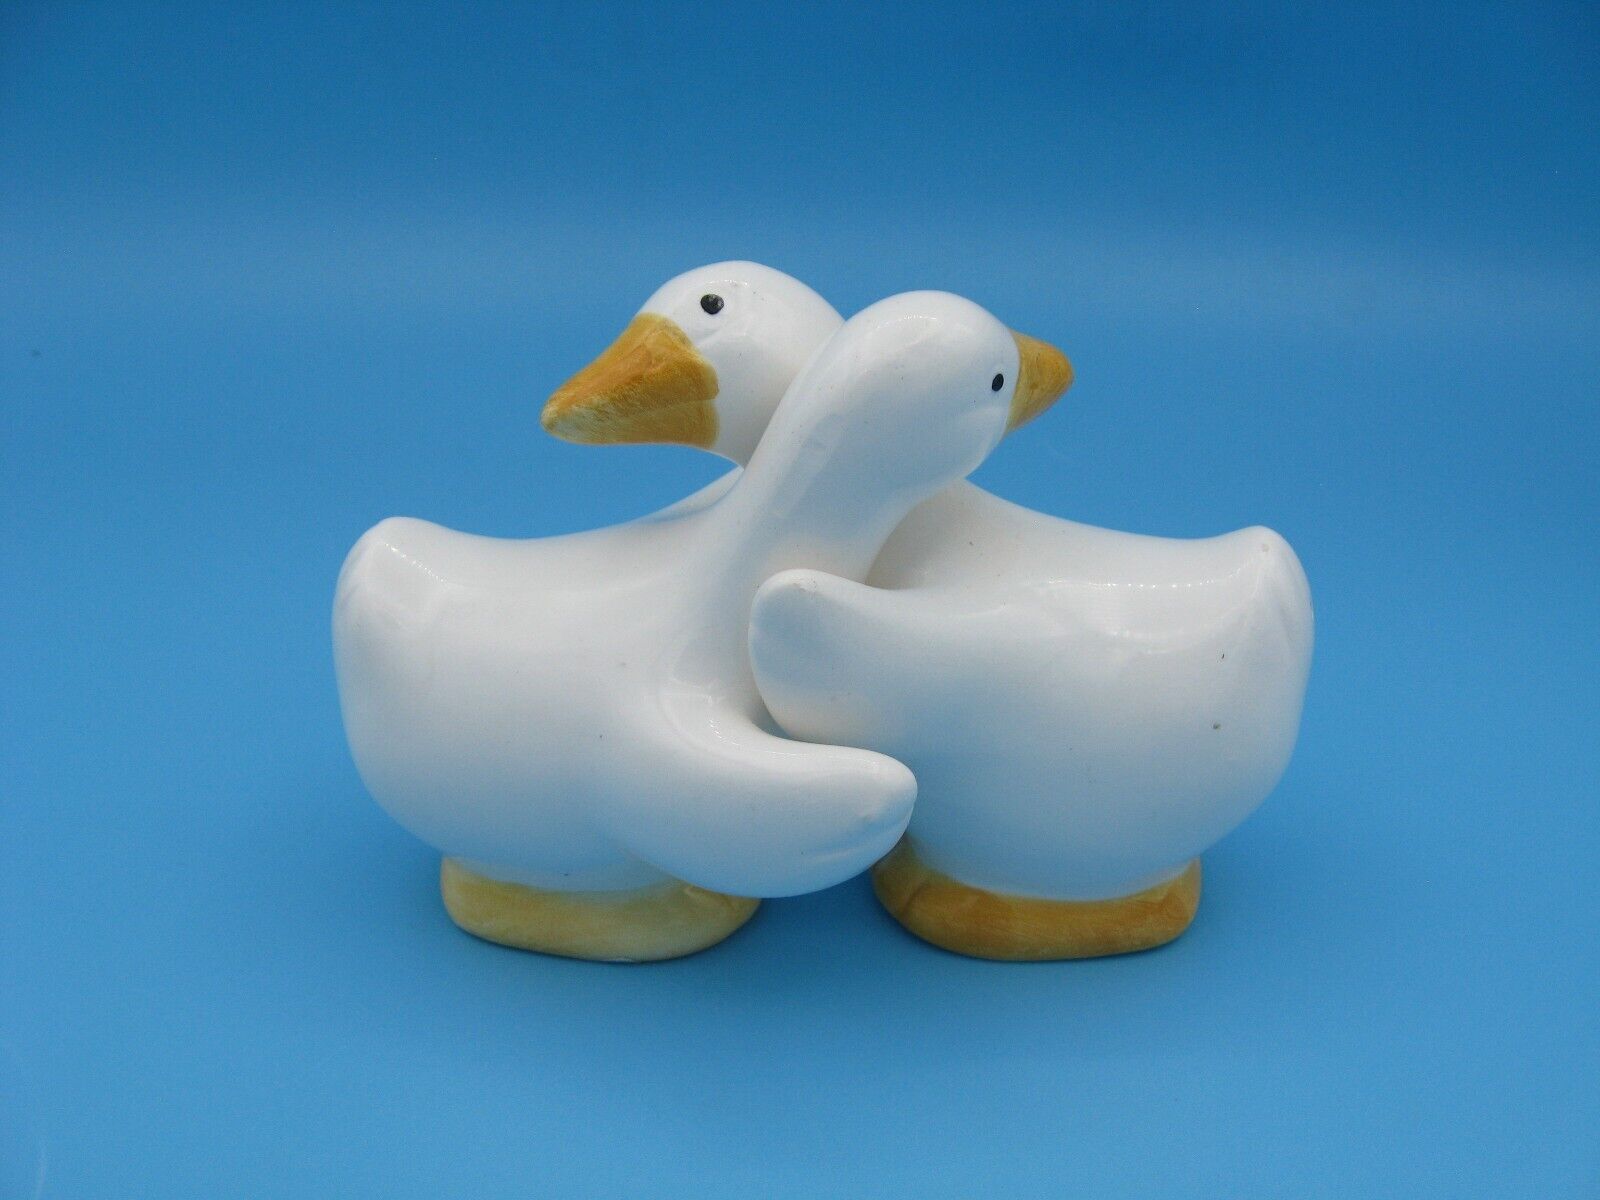 Vintage Omnibus Hugging Ducks or Geese Ceramic Salt & Pepper Shakers